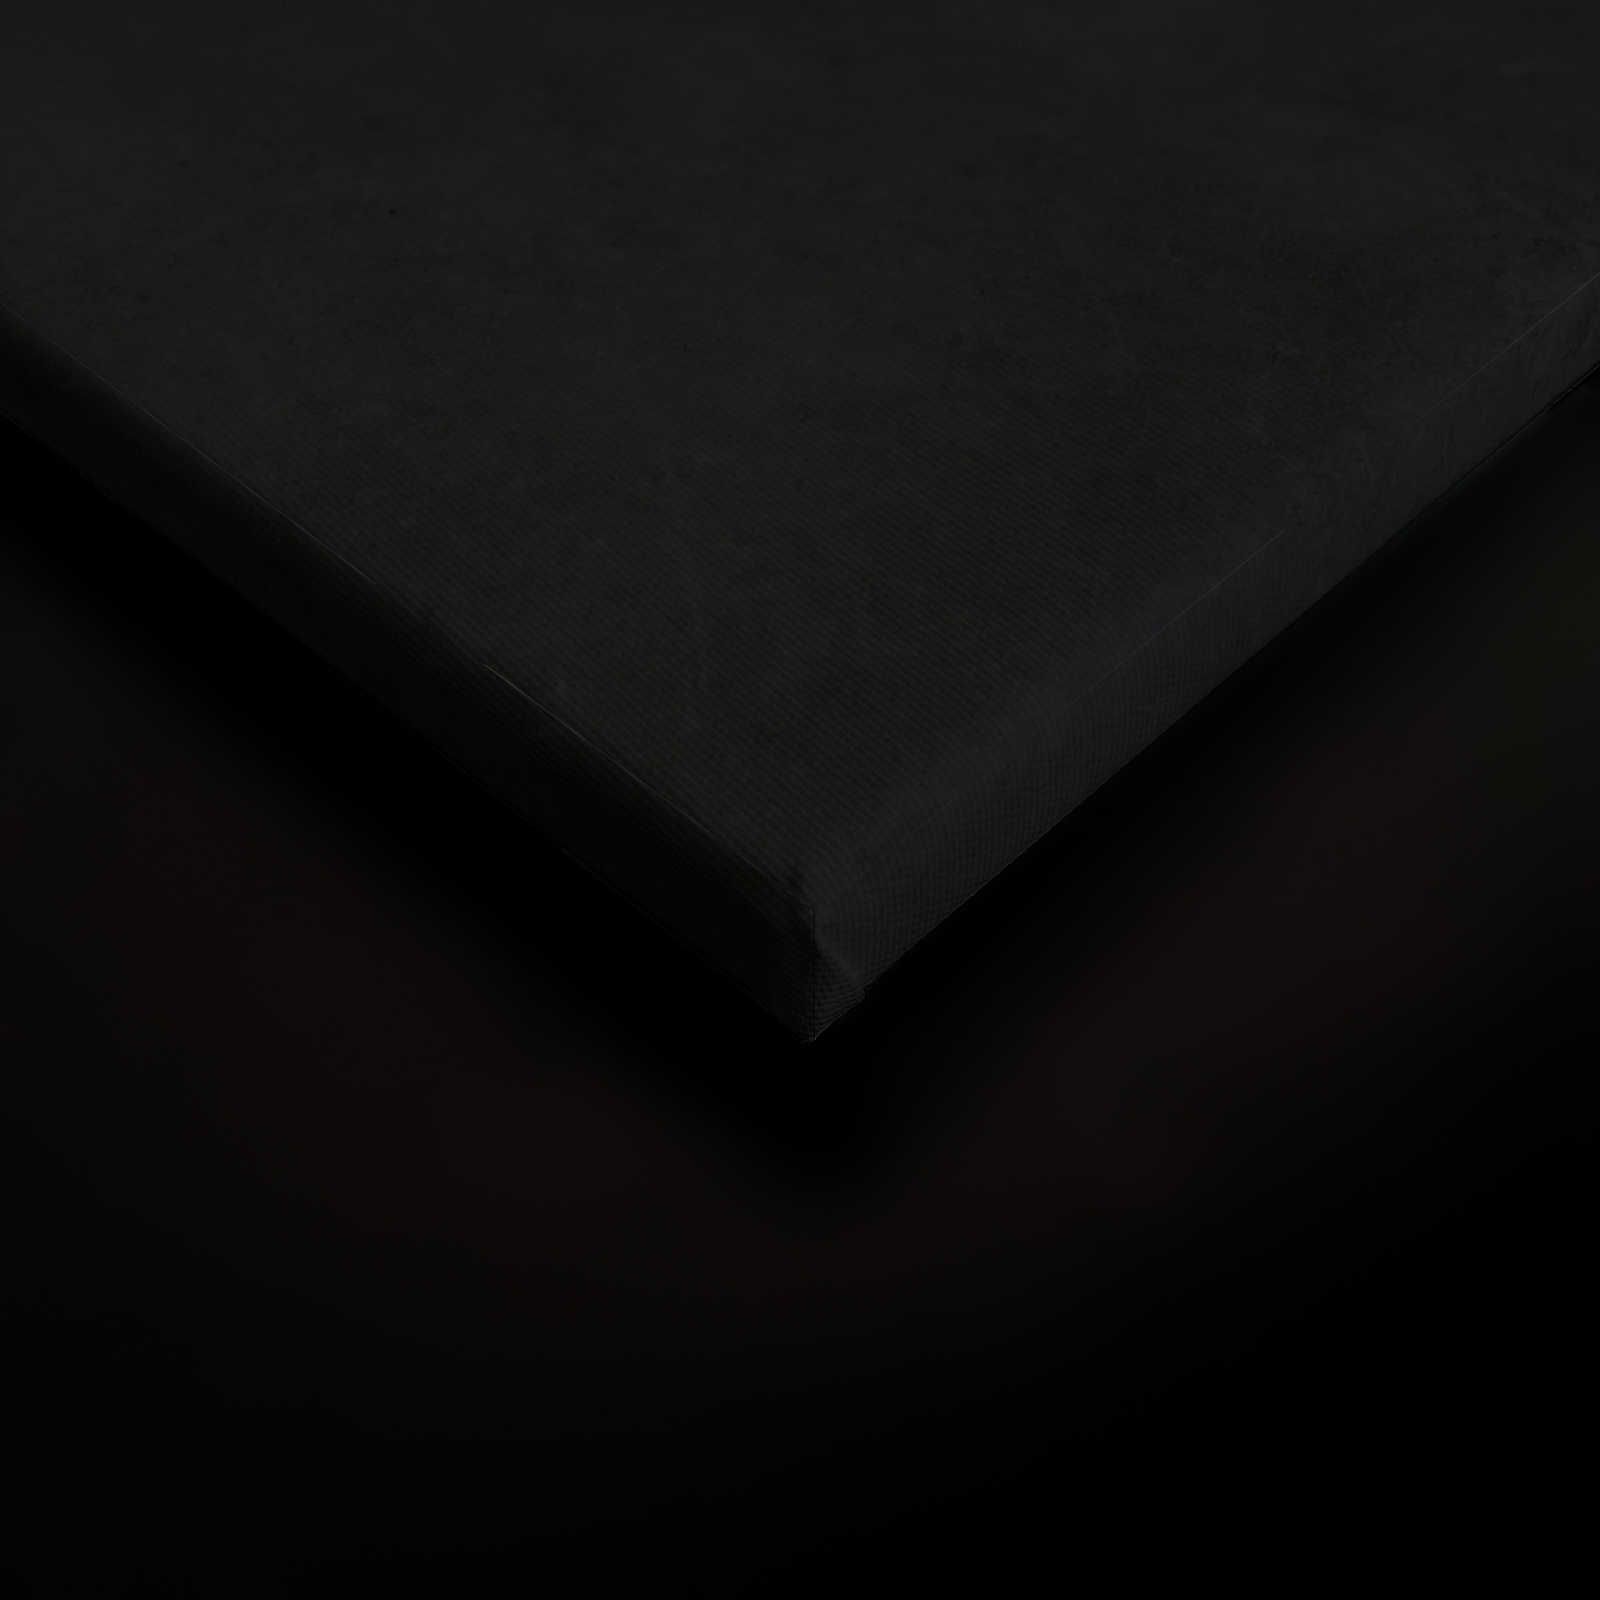             Giardino di mezzanotte 1 - Quadro su tela nera Stile pittura giglio in fiore - 0,60 m x 0,90 m
        